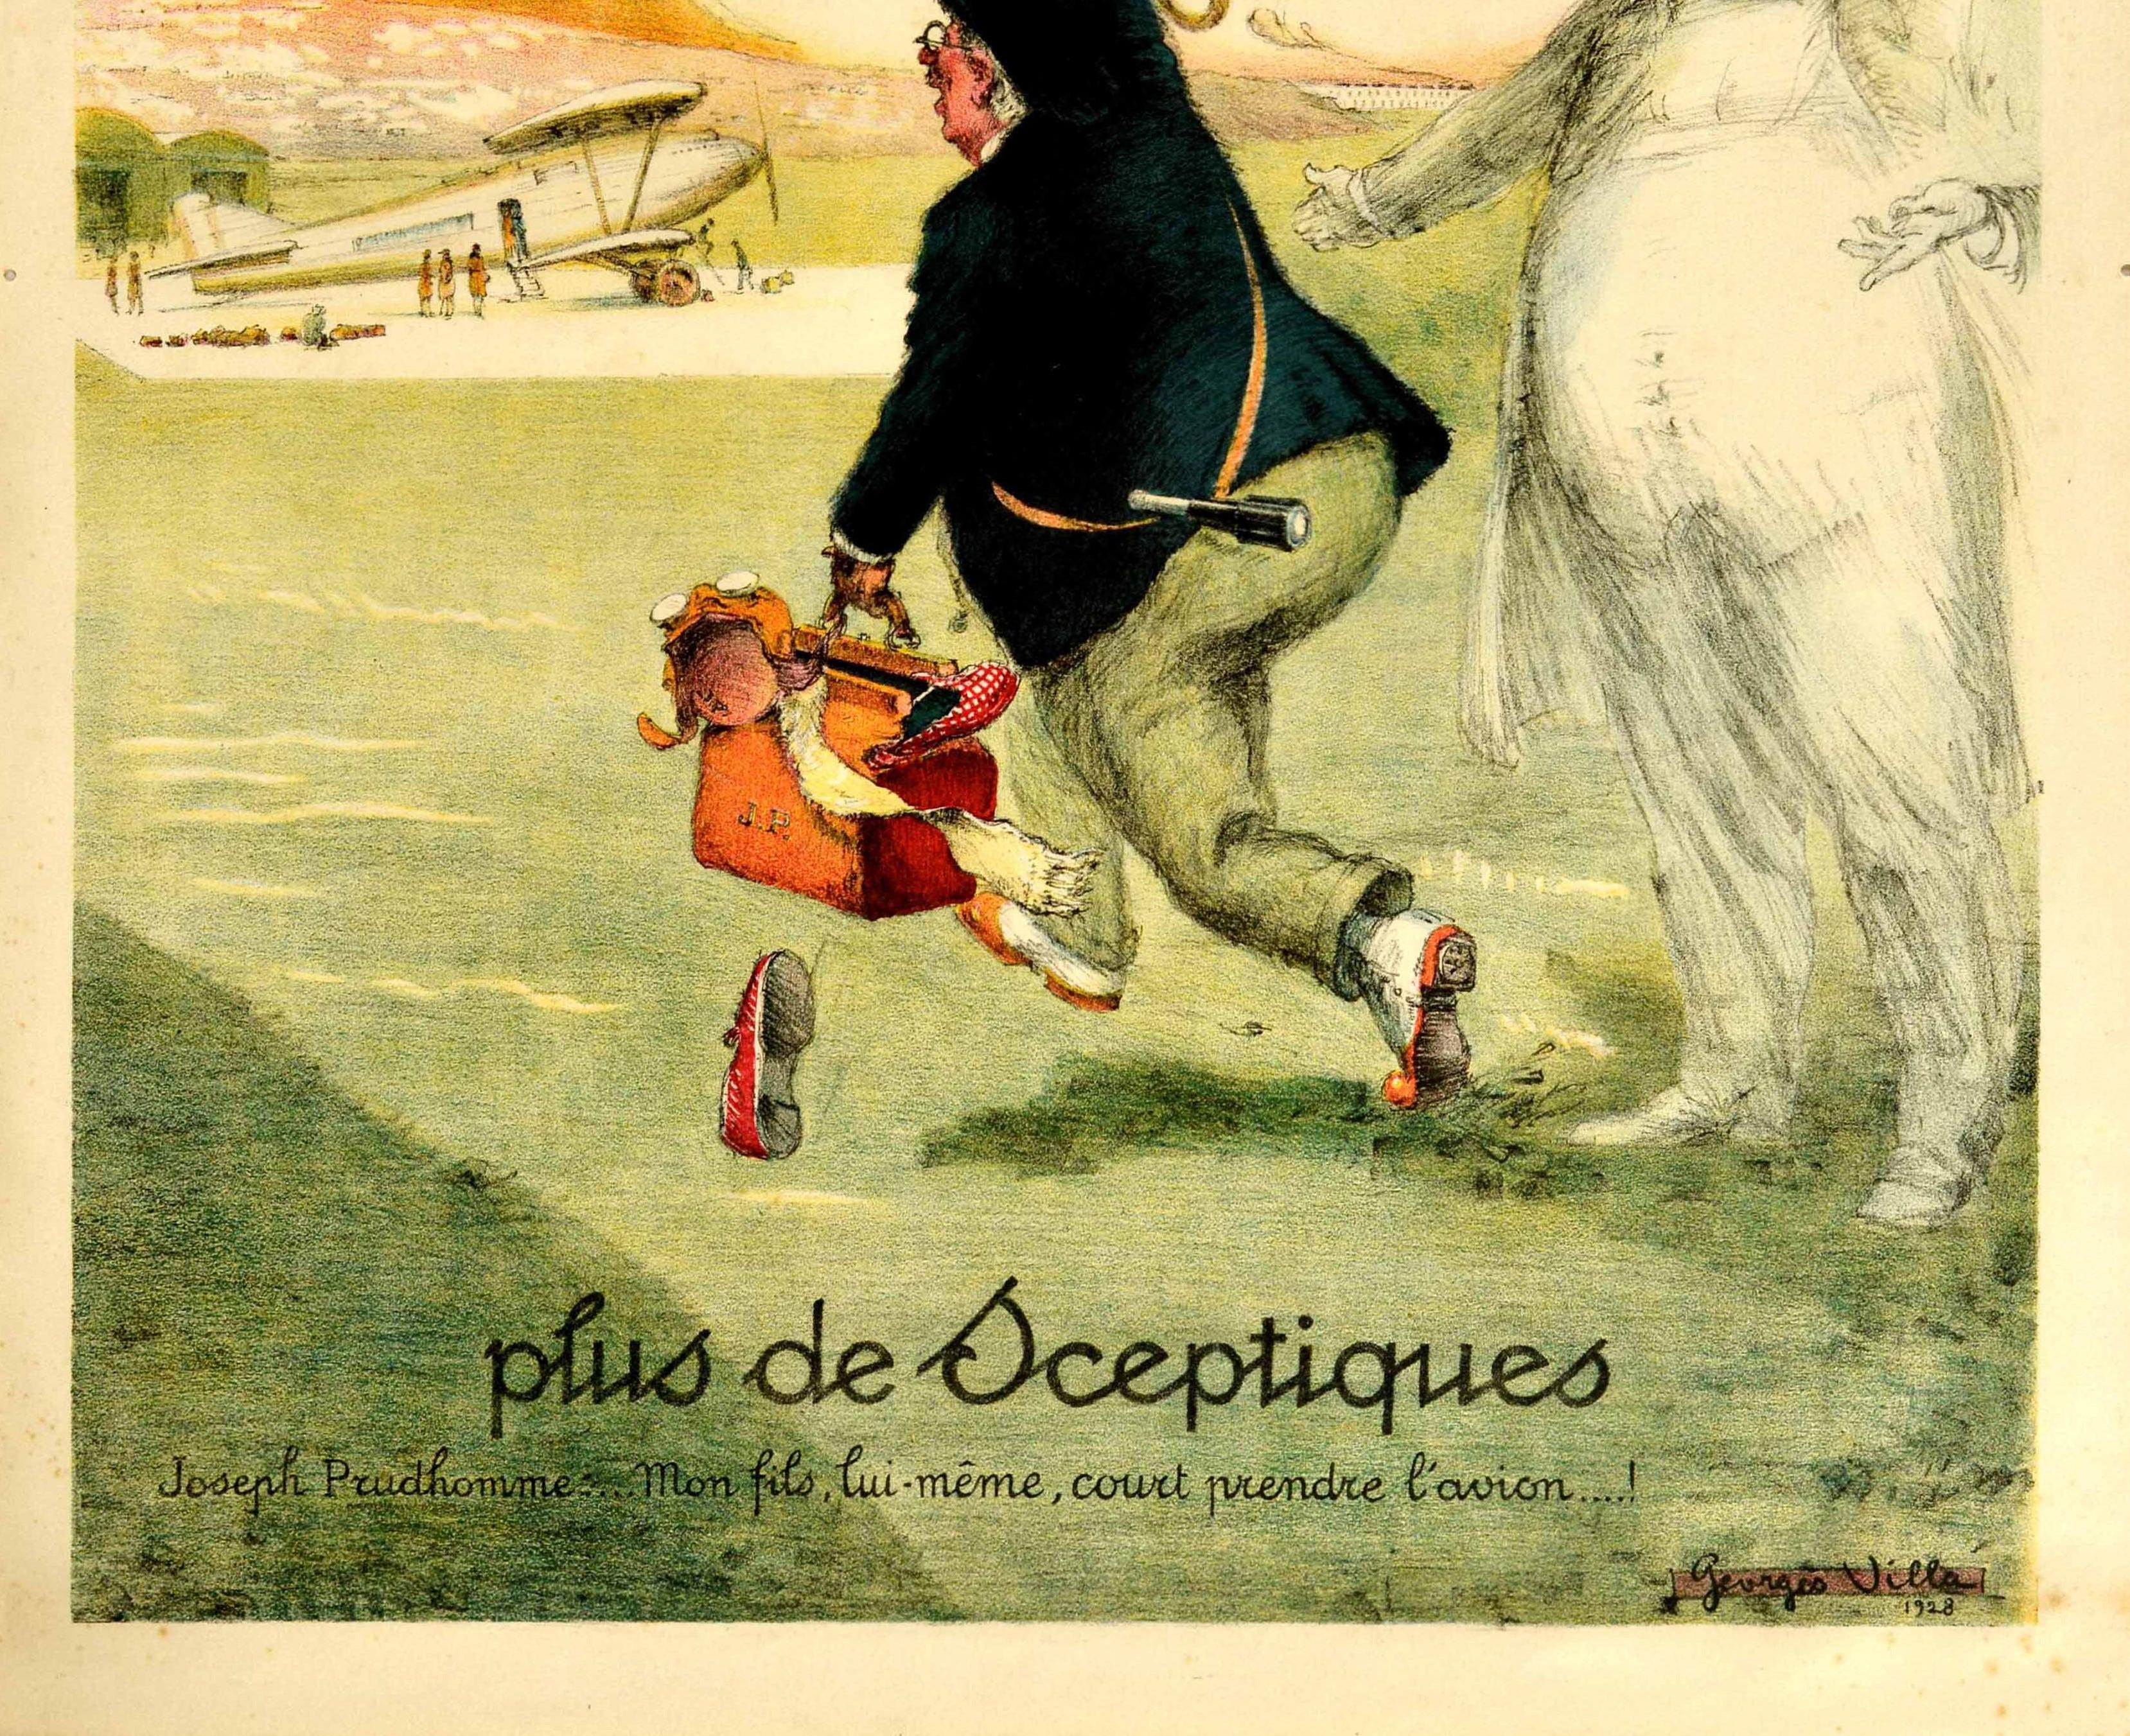 French Original Vintage Poster 20 Ans Plus De Sceptiques Aviation Flights Plane Travel